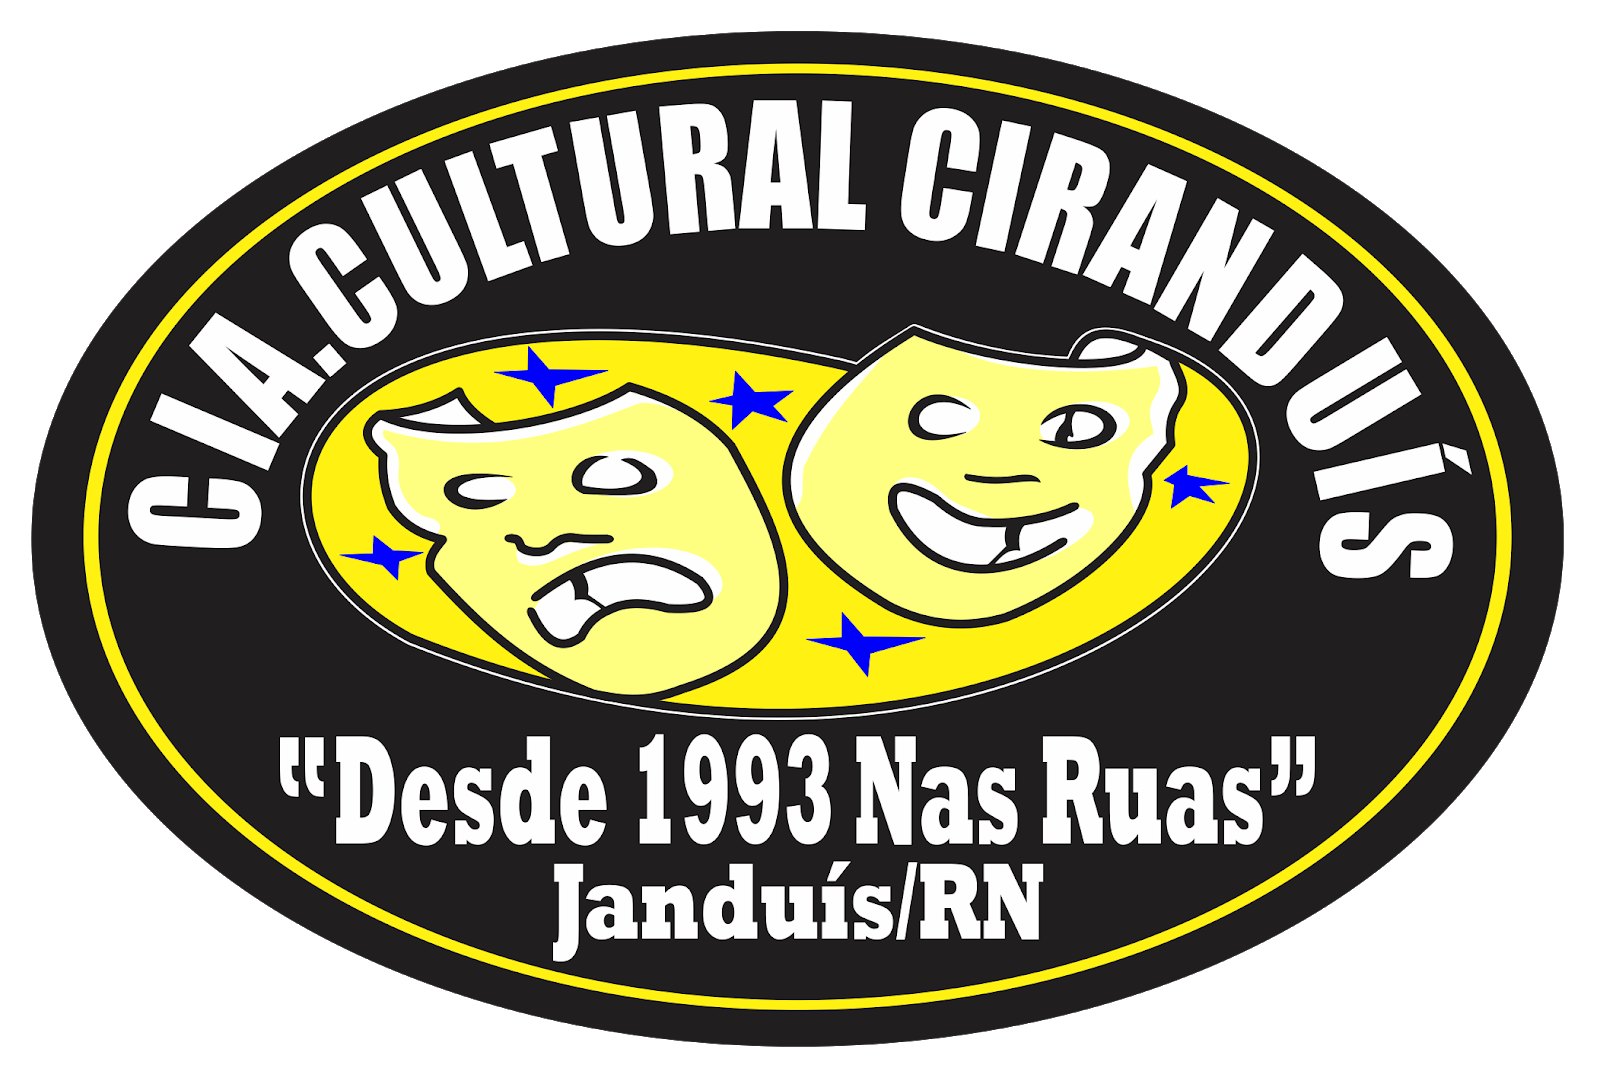 Cia. Cultural Ciranduís